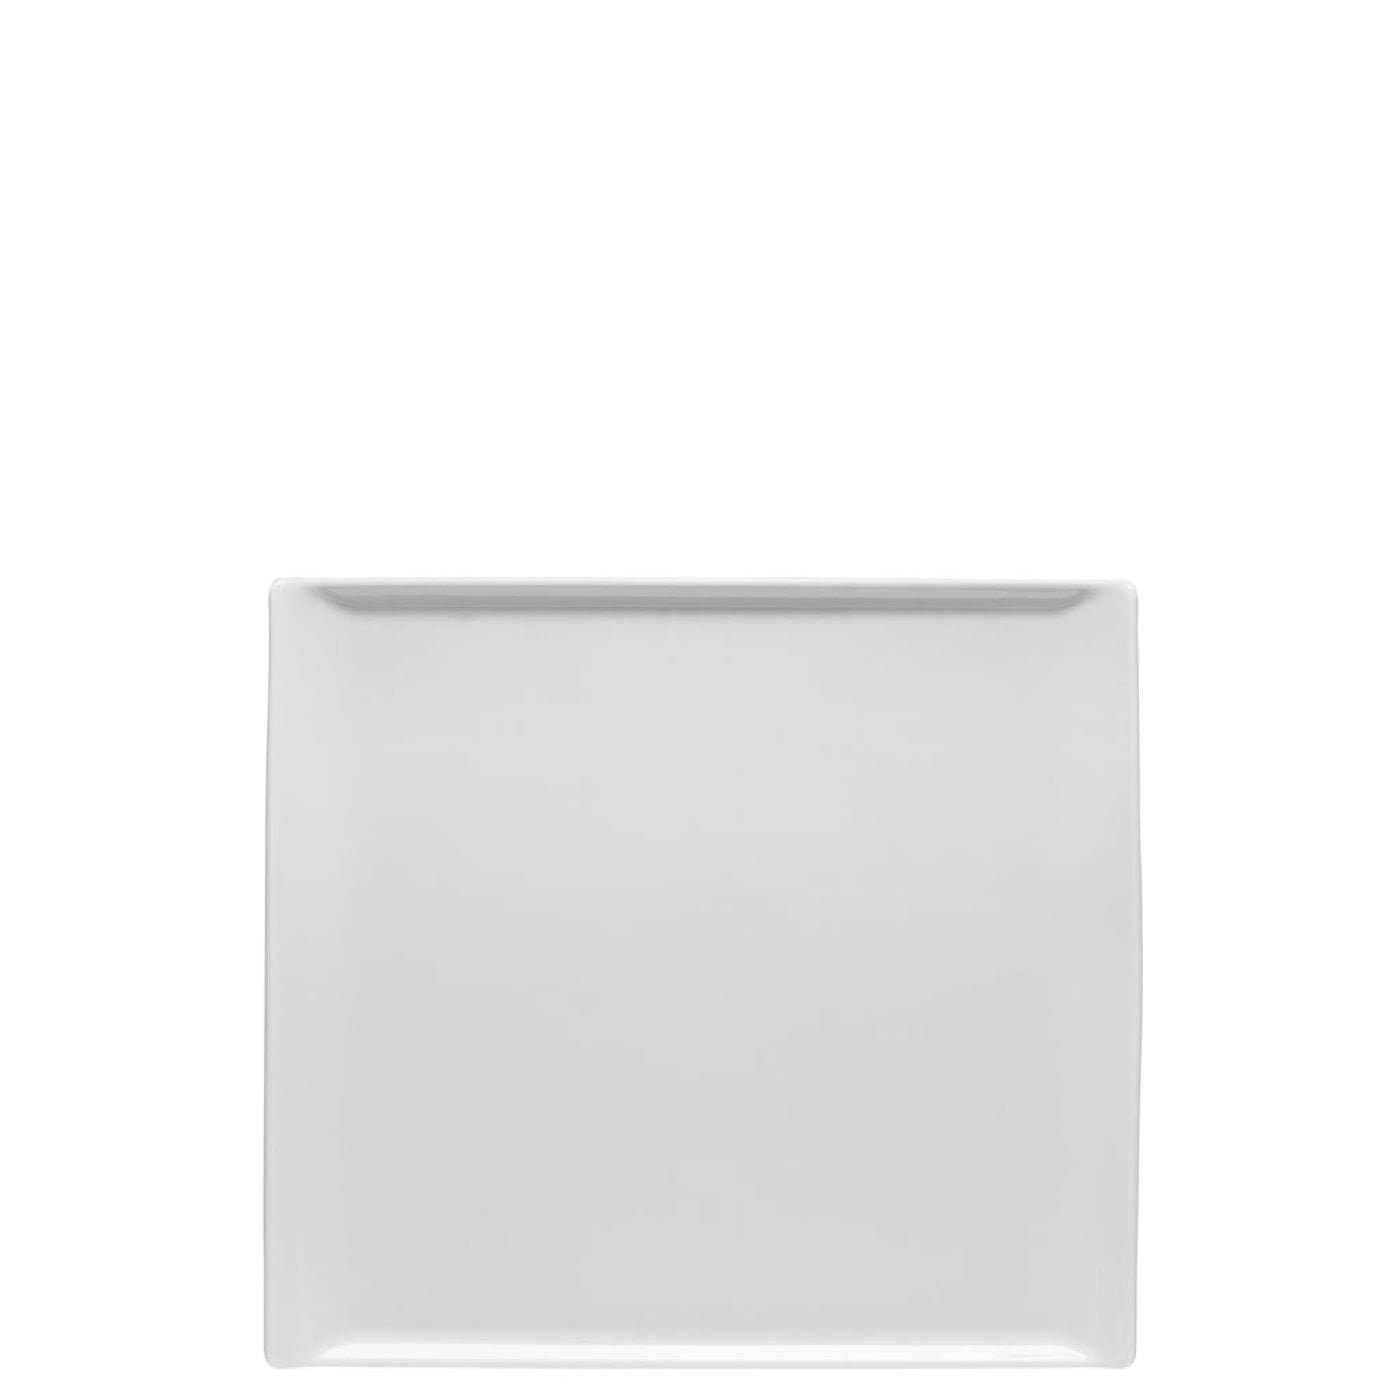 Rosenthal Servierplatte Mesh Weiß Platte 26 x 24 cm flach, Porzellan, (1-tlg)